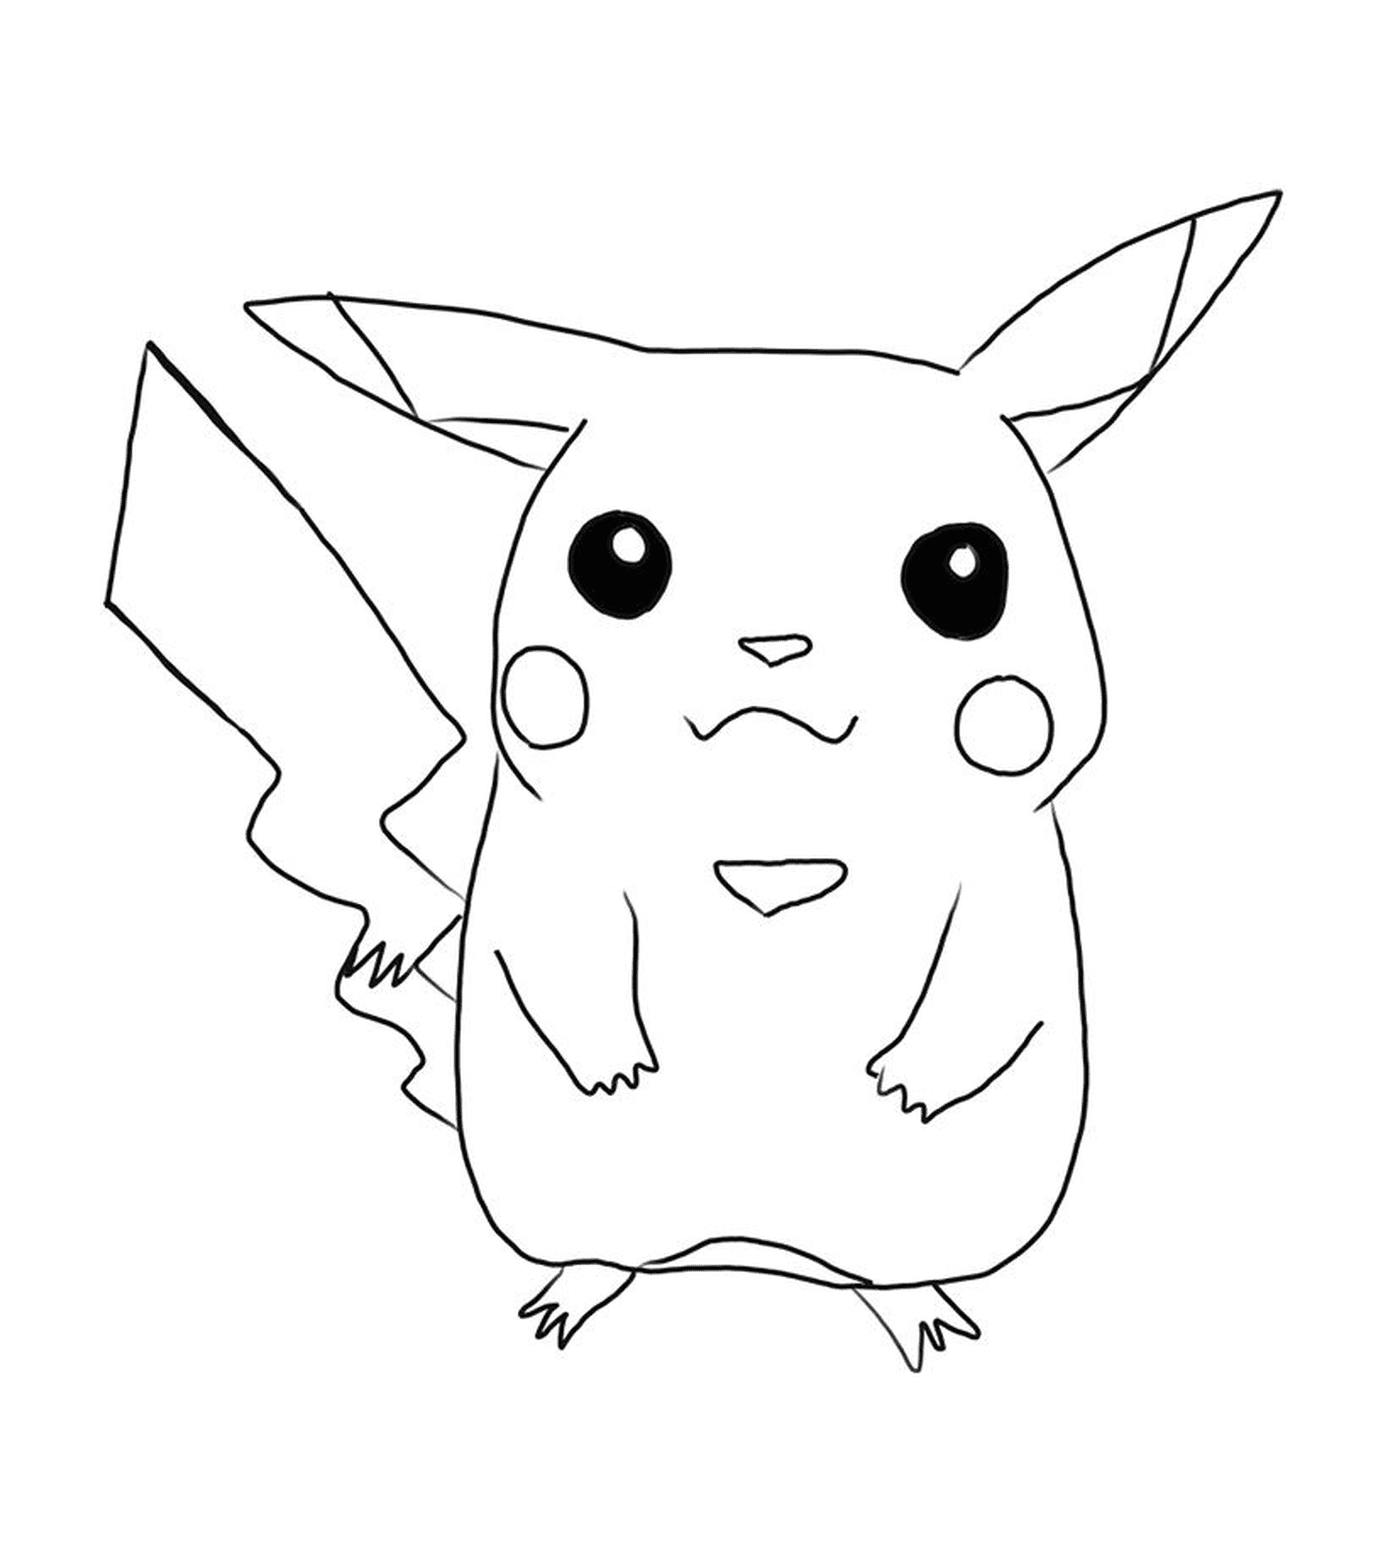  Pikachu, Symbol der Liebenswürdigkeit 